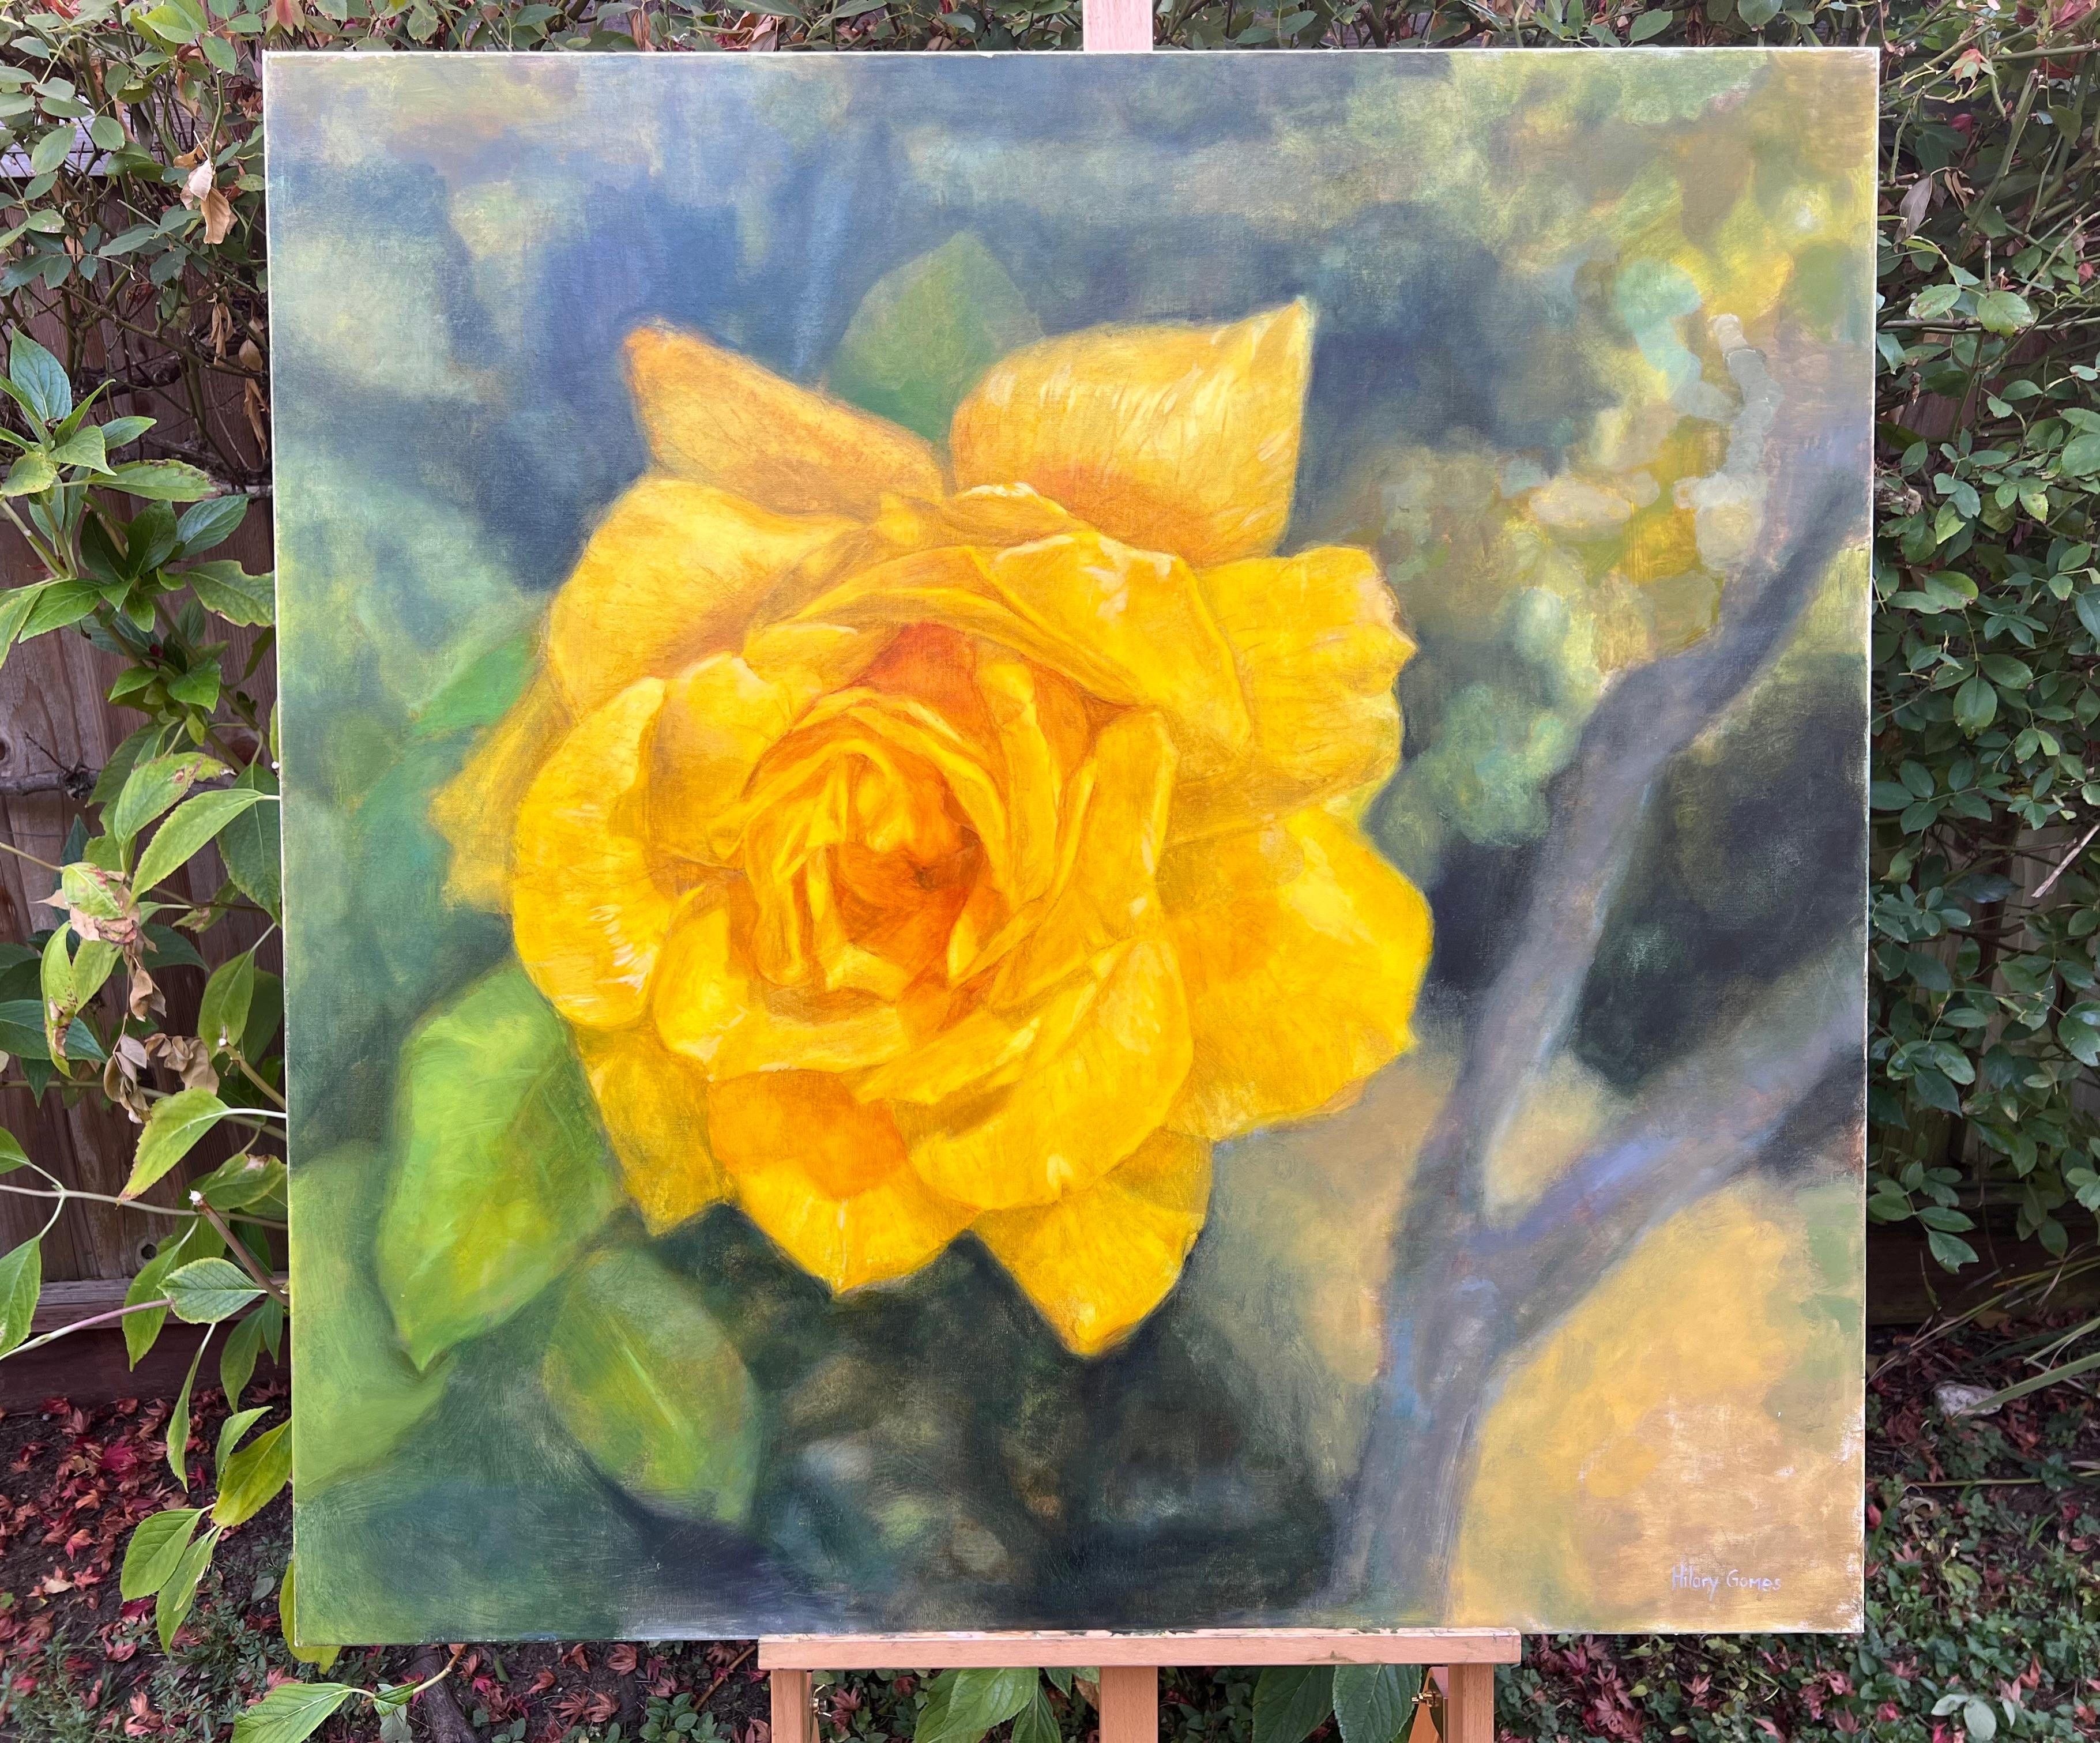 <p>Kommentare des Künstlers<br>Eine gelbe Rose blüht auf einem Strauch, ihre Blütenblätter glänzen in der Sonne. Durch Licht und Farbe fängt Hilary die inspirierende Schönheit ihres Gartens ein. Für sie ist das Malen von Blumen eine Metapher für das